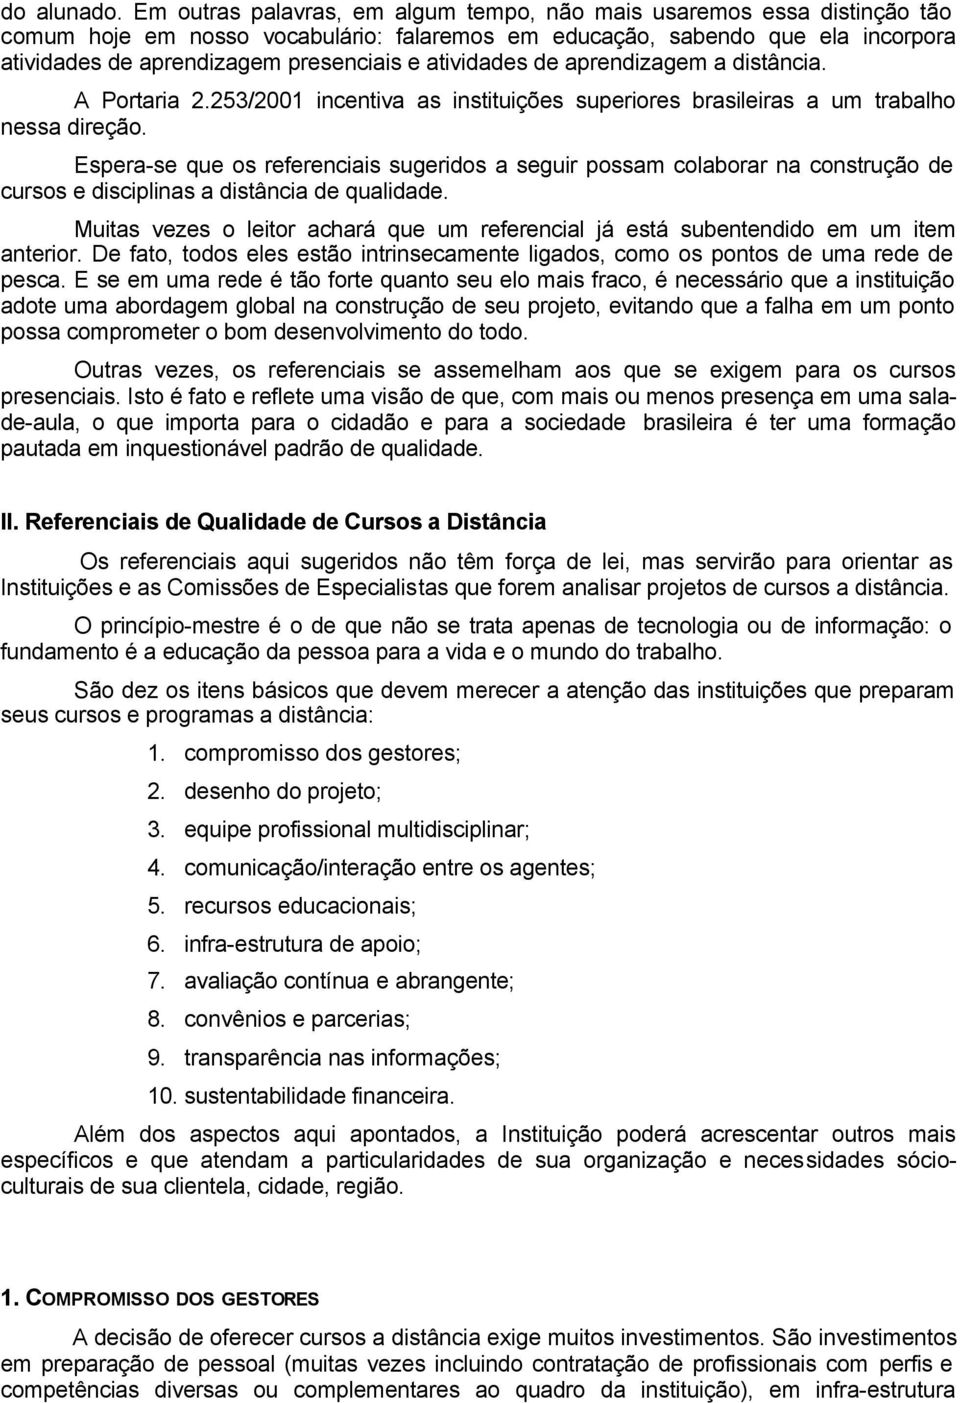 atividades de aprendizagem a distância. A Portaria 2.253/2001 incentiva as instituições superiores brasileiras a um trabalho nessa direção.